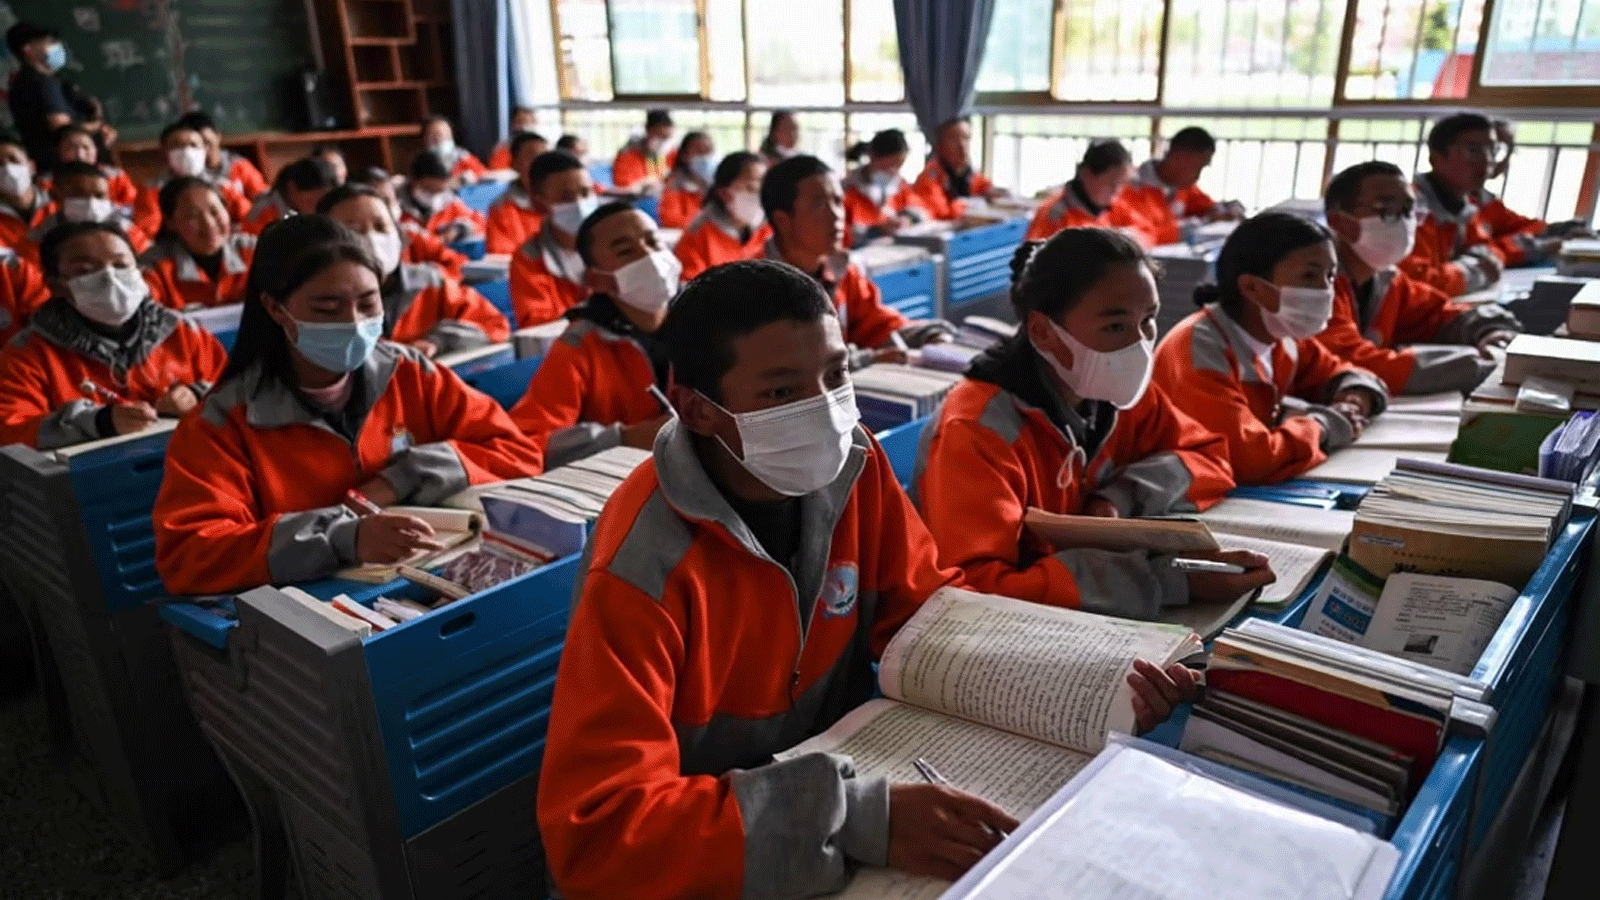 صورة تم التقاطها خلال جولة إعلامية نظمتها الحكومة تُظِهر الطلاب في فصل دراسي في مدرسة لاسا ناغتشو الثانوية الثانية في منطقة التبت ذاتية الحكم في الصين في يونيو\حزيران 2021